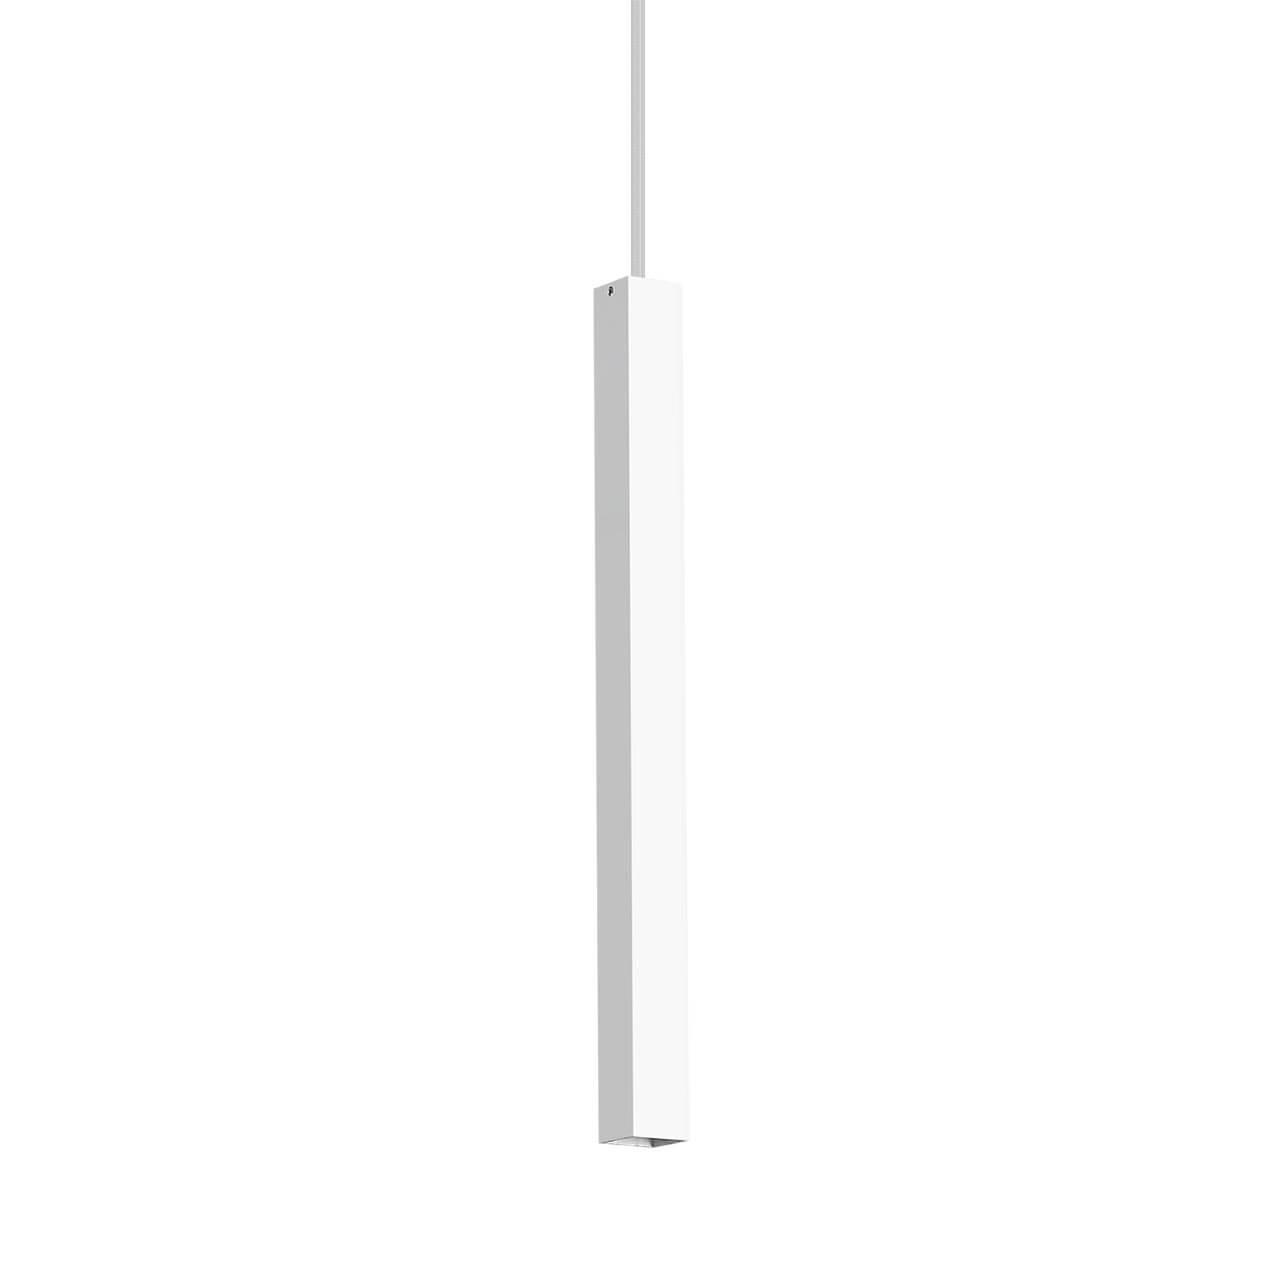 Подвесной светодиодный светильник Ideal Lux Ultrathin D040 Square Bianco 194189 светодиодный спот ideal lux goose ap bianco 142708